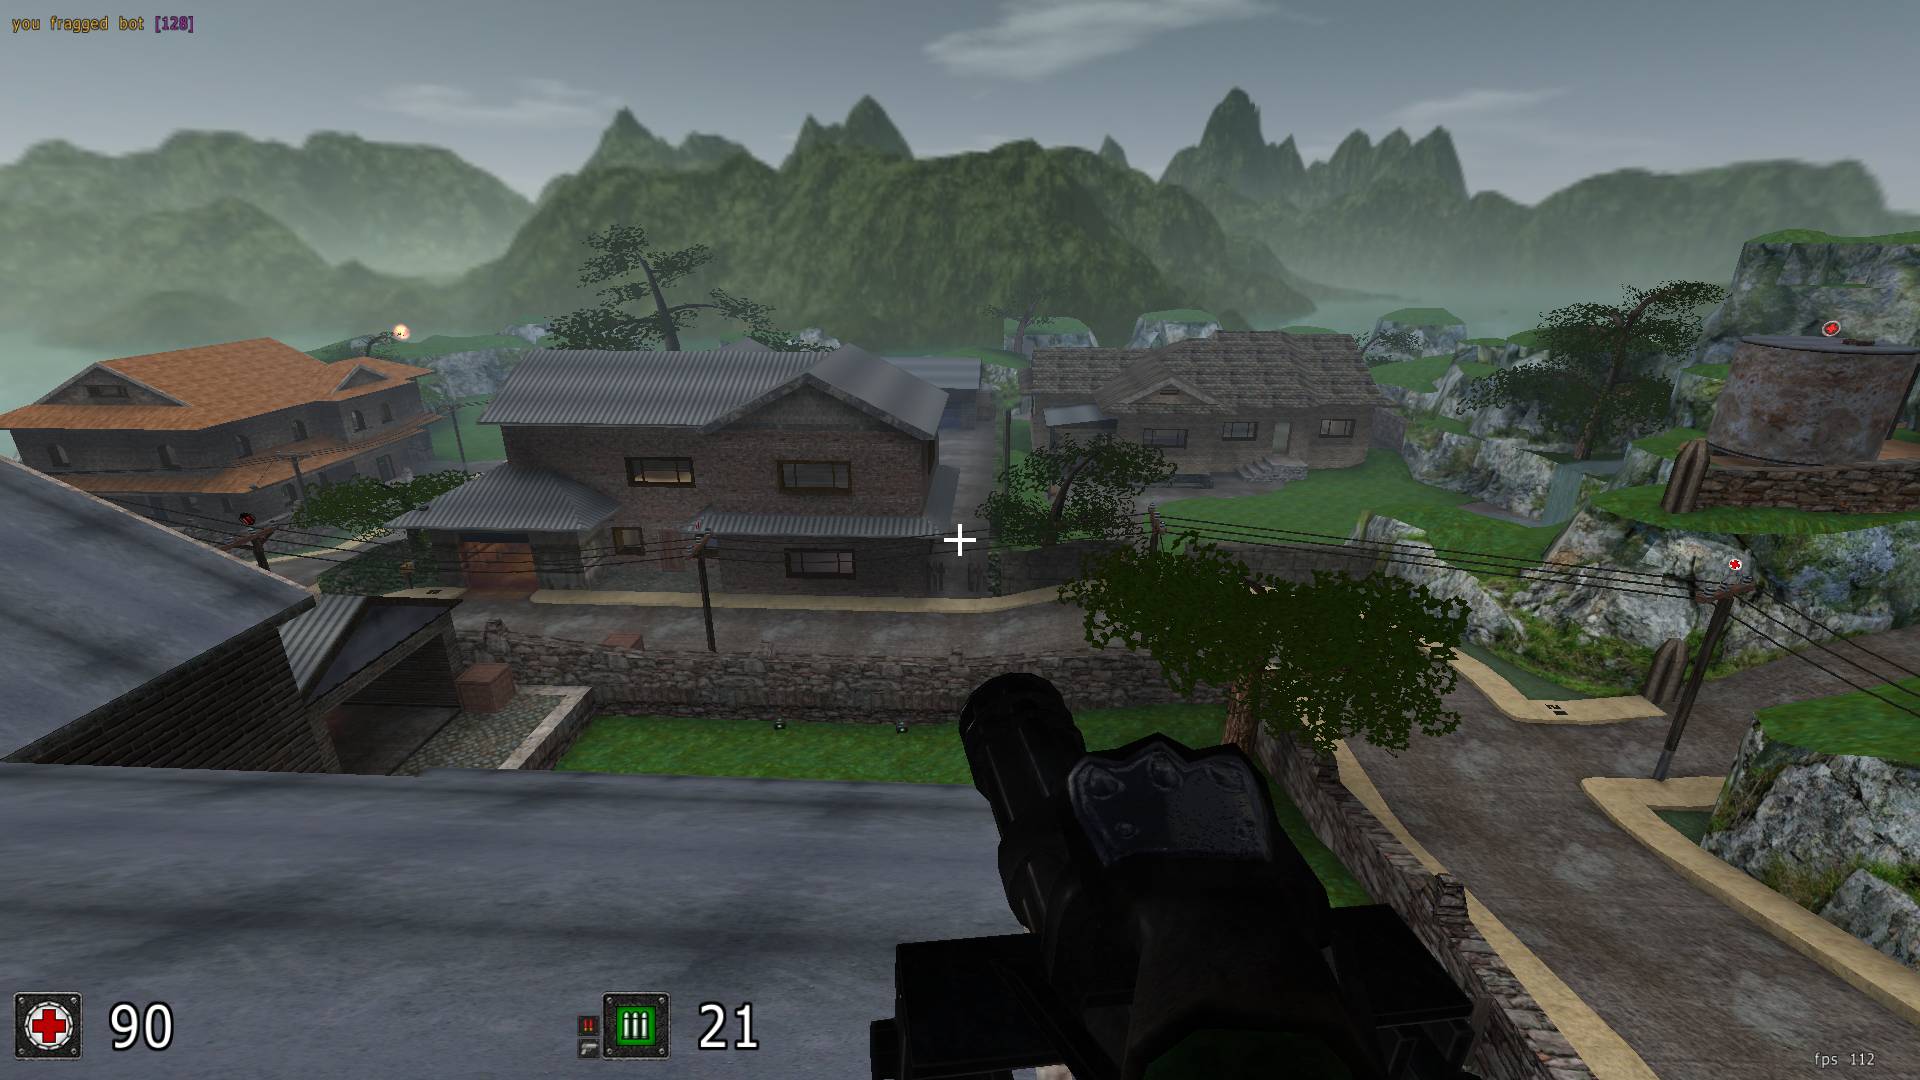 Download & Play World War 2 Shooter - offline on PC & Mac (Emulator)